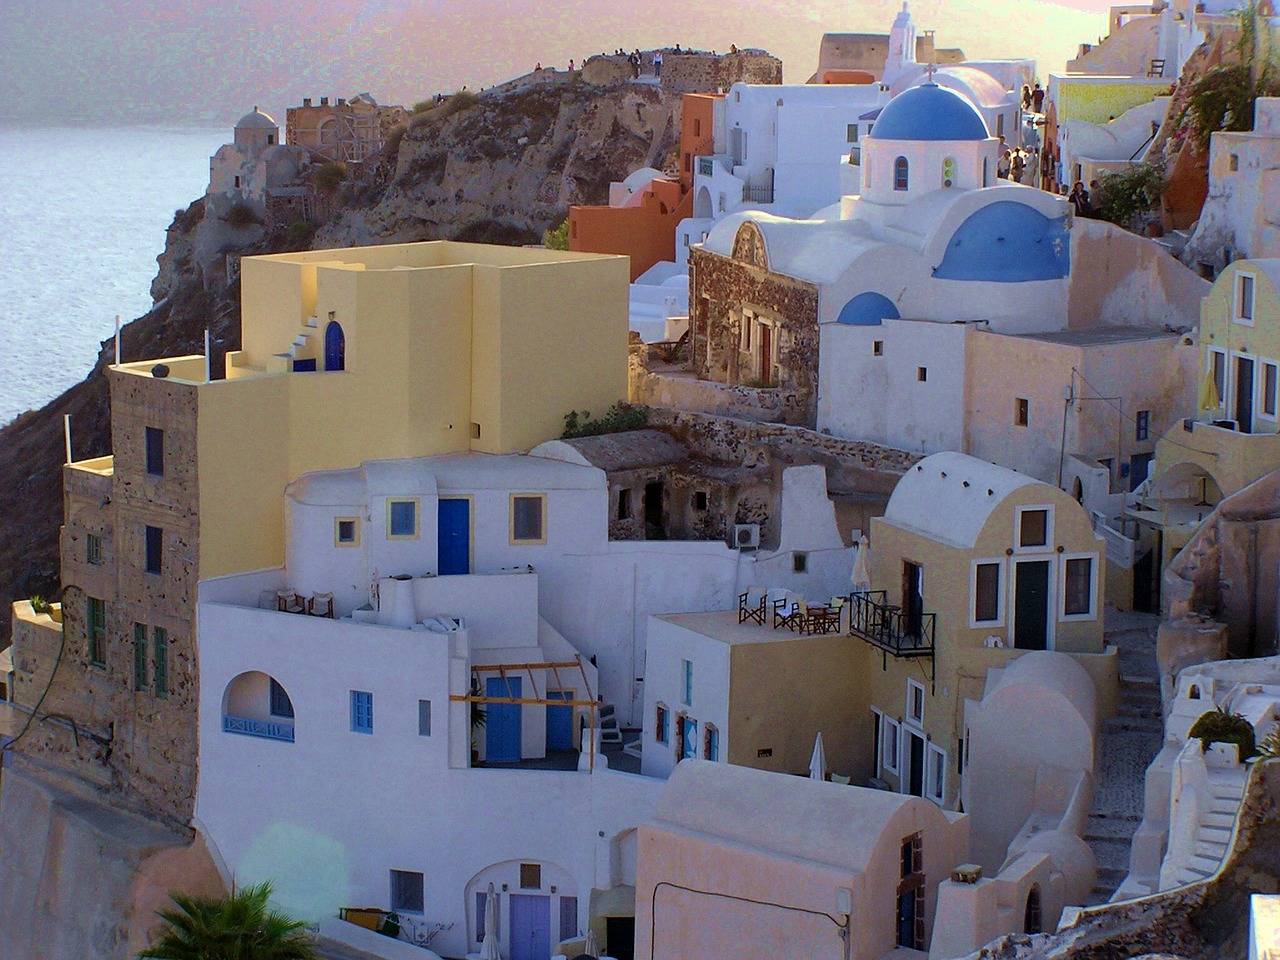 Santorini Greece Boiler by brunocarr on Pixabay